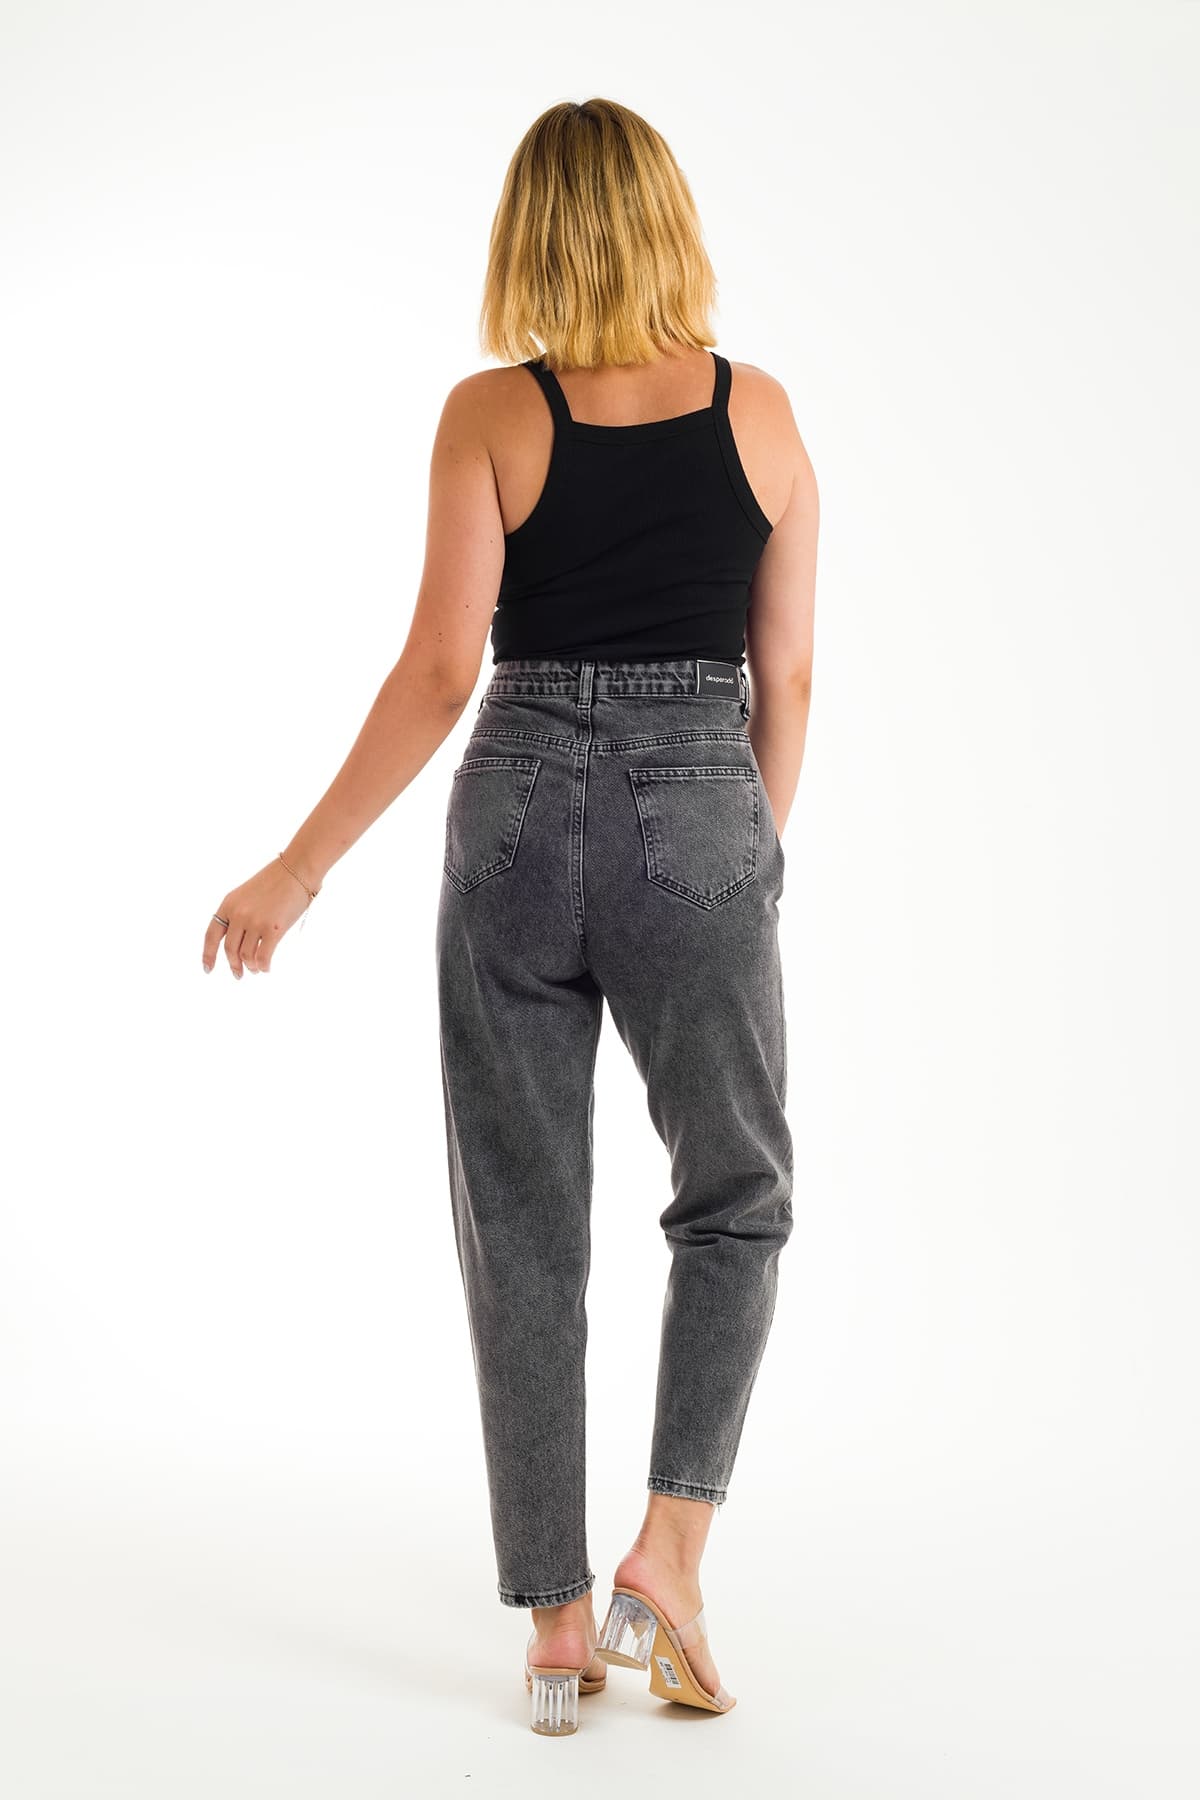 Desperado 303 Yırtık Desenli Geniş Paçalı Mom Jeans Kadın Kot Pantolon